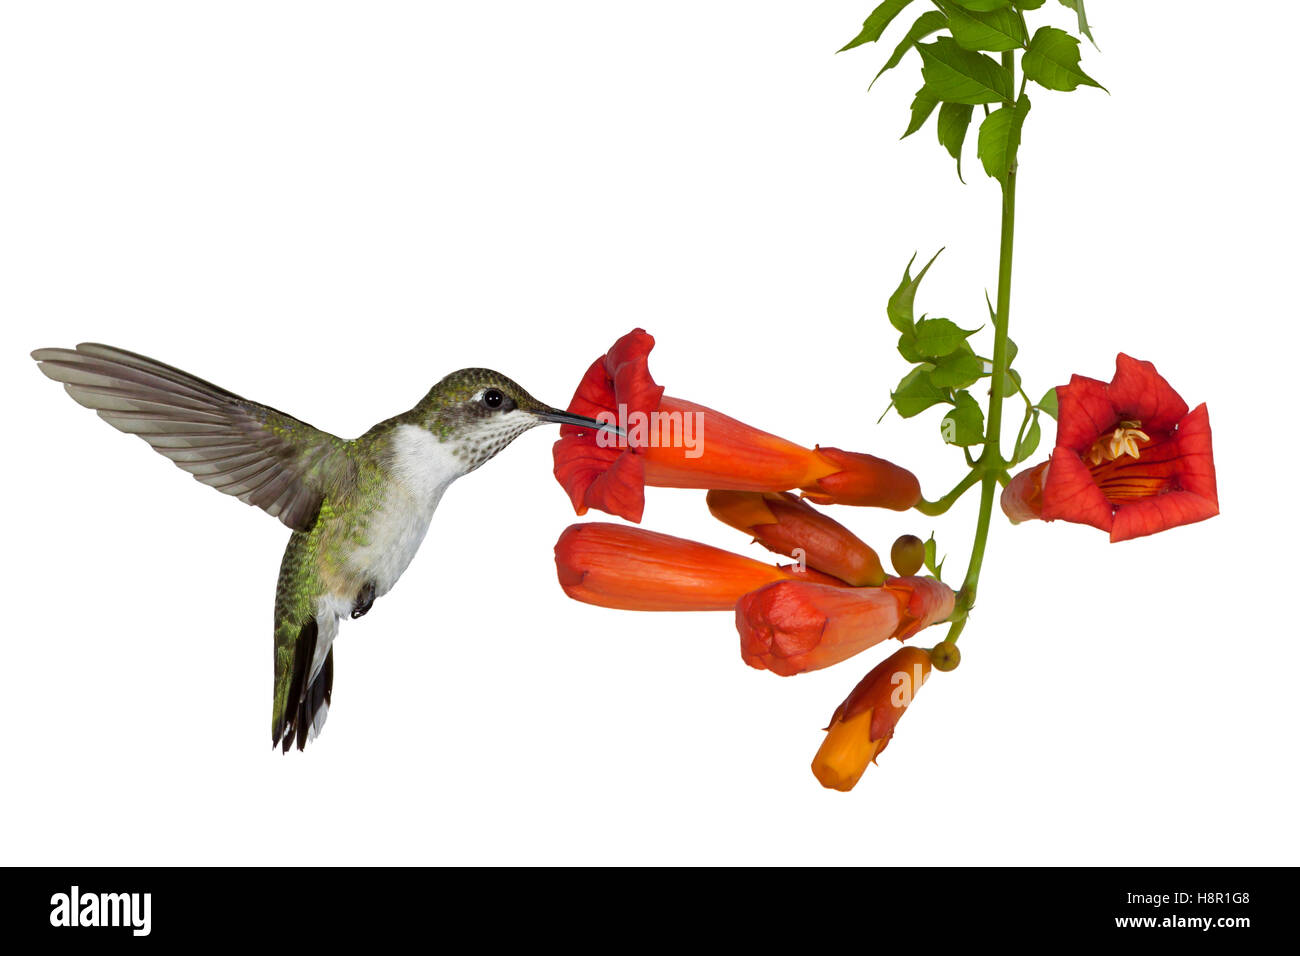 Un rubino throated hummingbird sips nettare da un vitigno a campana, isolata su uno sfondo bianco. Foto Stock